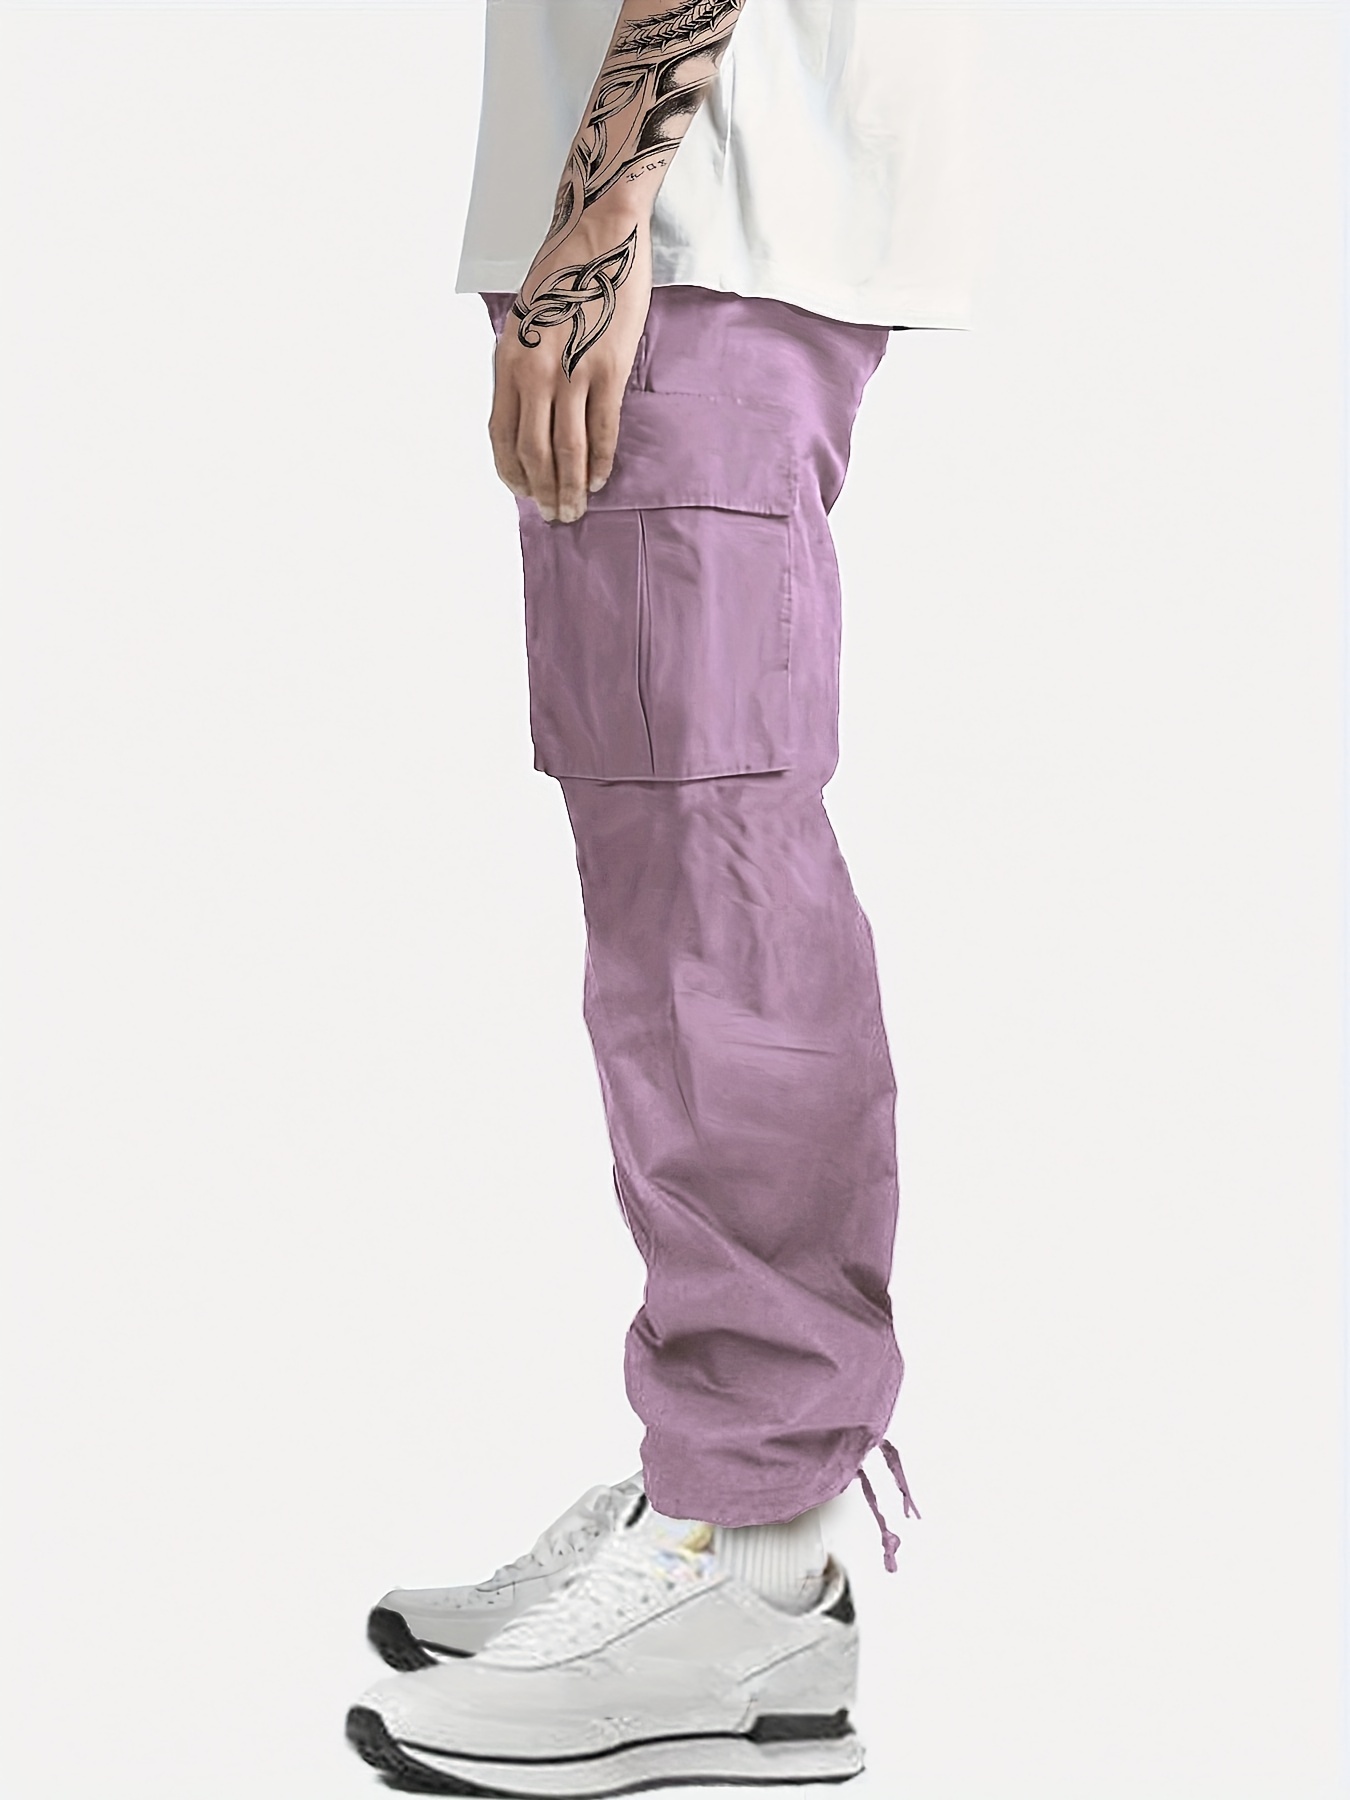 Men's Purple Cargo Pants